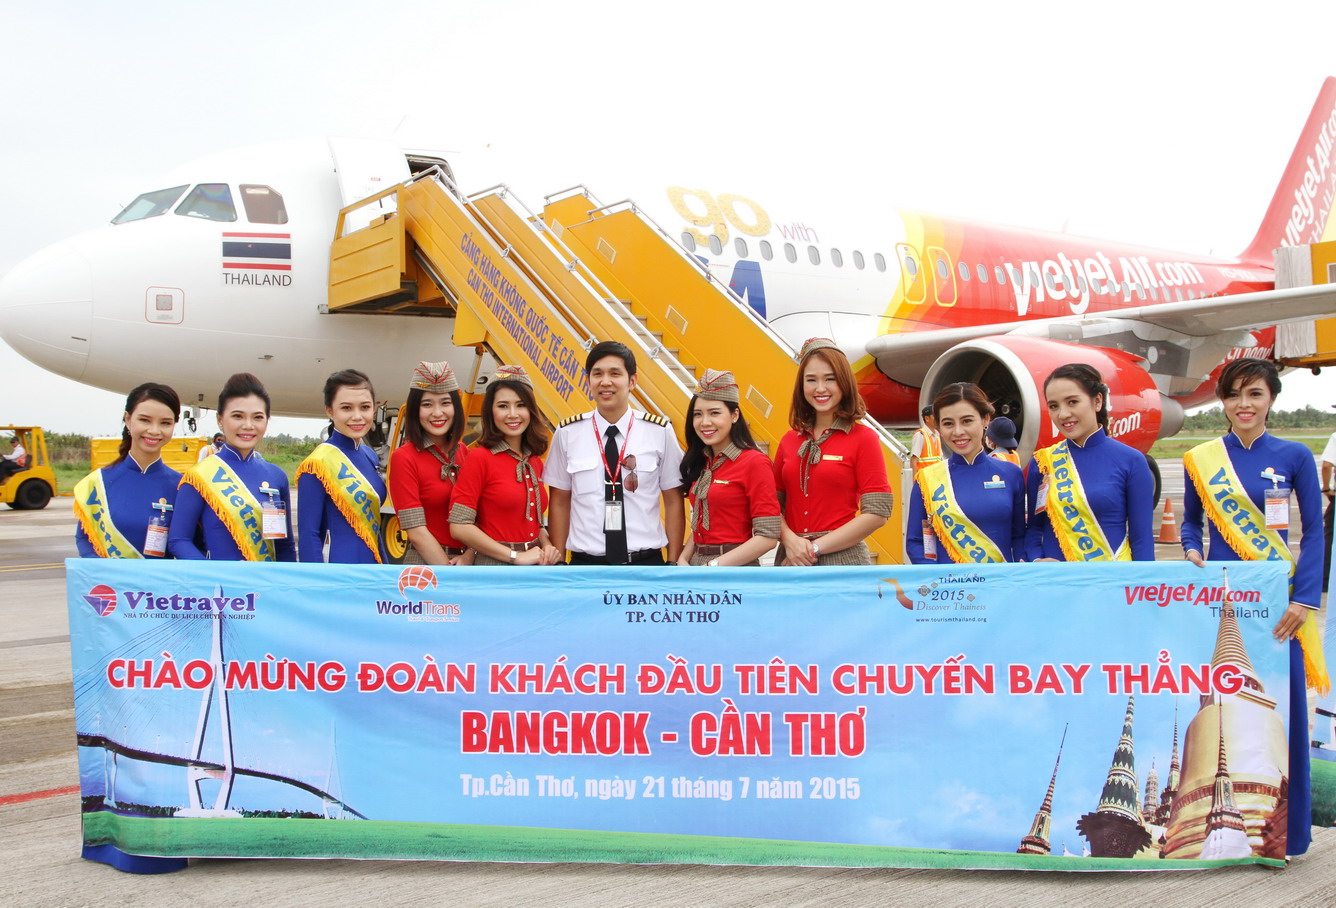 Thuê bao nguyên chuyến - xu hướng phát triển mới của ngành du lịch Việt Nam